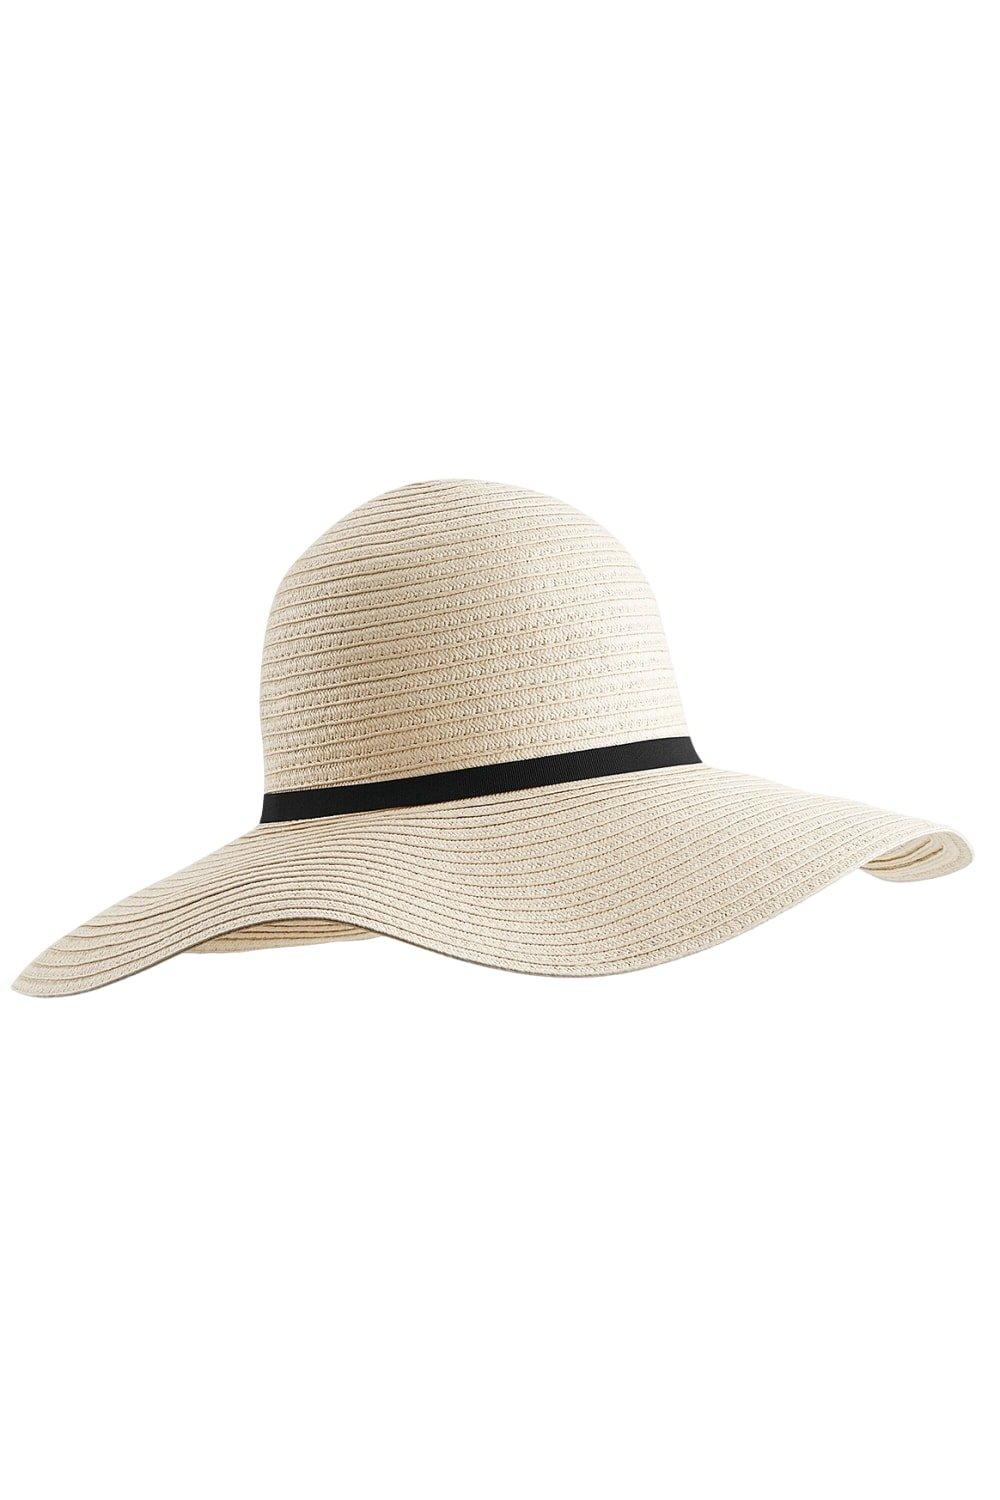 Шляпа от солнца с широкими полями Marbella Beechfield, обнаженная панама с широкими полями для мужчин шляпа с защитой от уф излучения для активного отдыха рыбалки походов козырек от солнца дышащая кепка